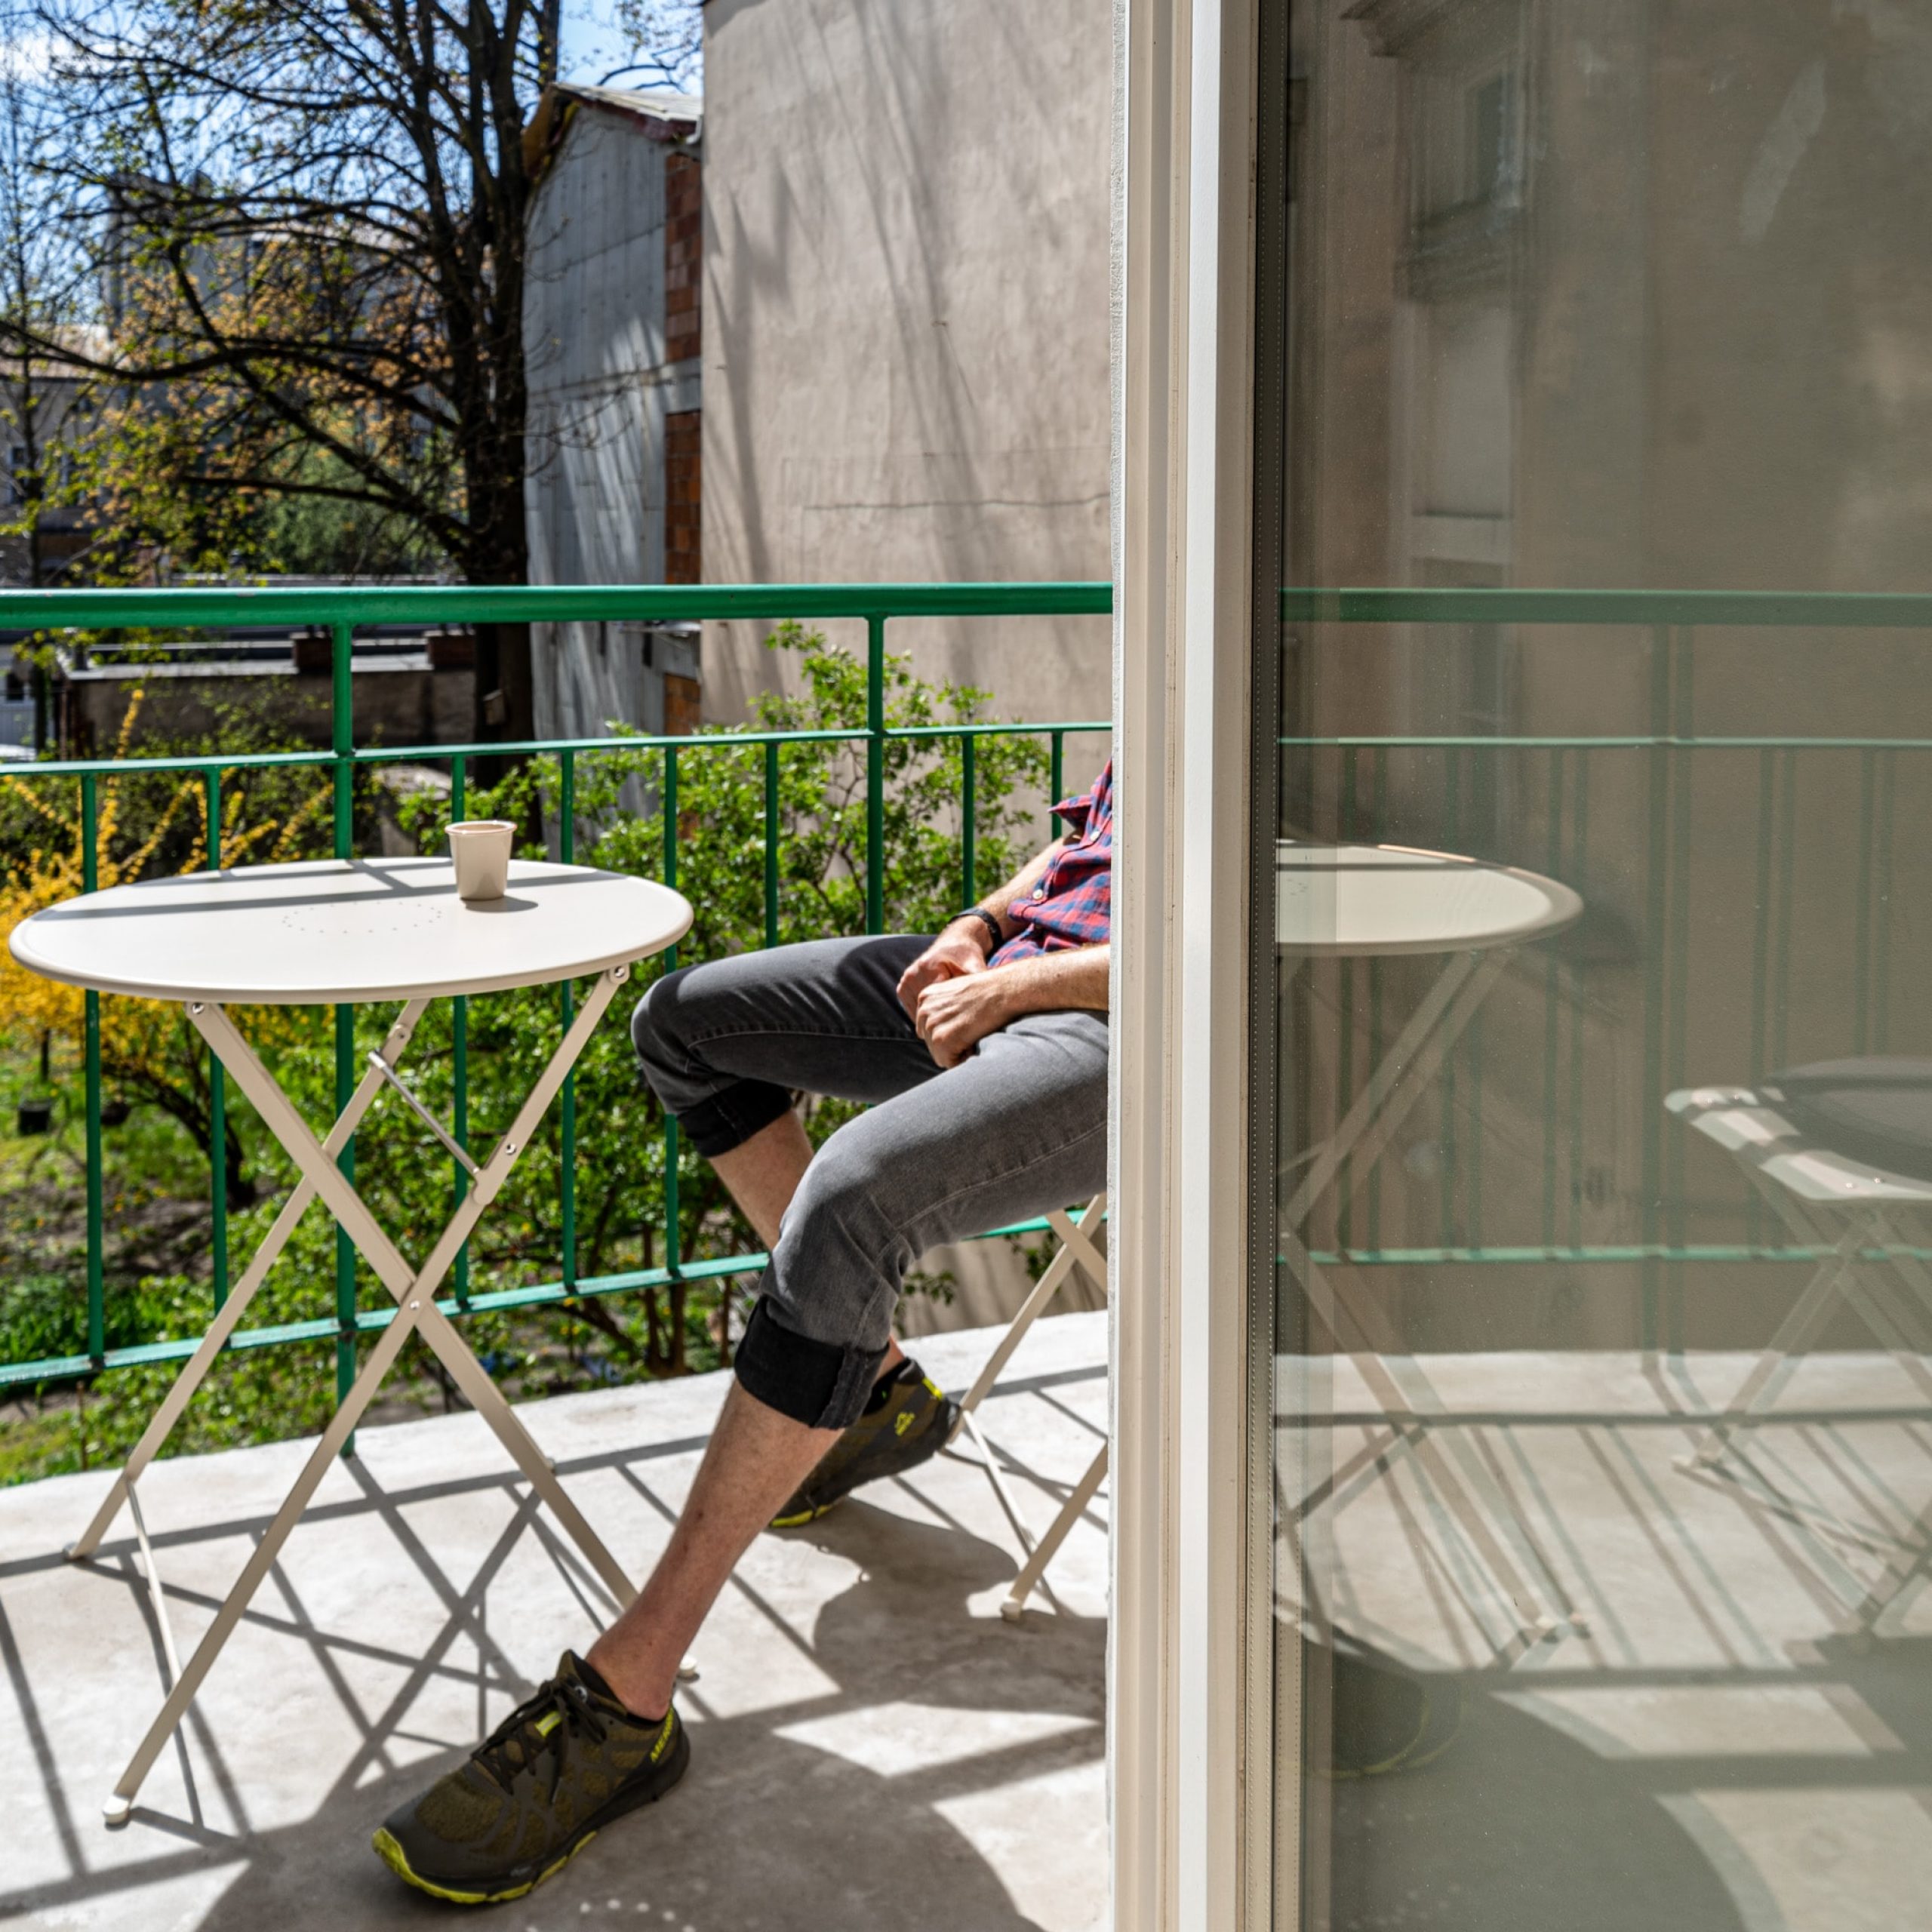 Elementy architektury, które ożywią Twój ogród lub balkon!